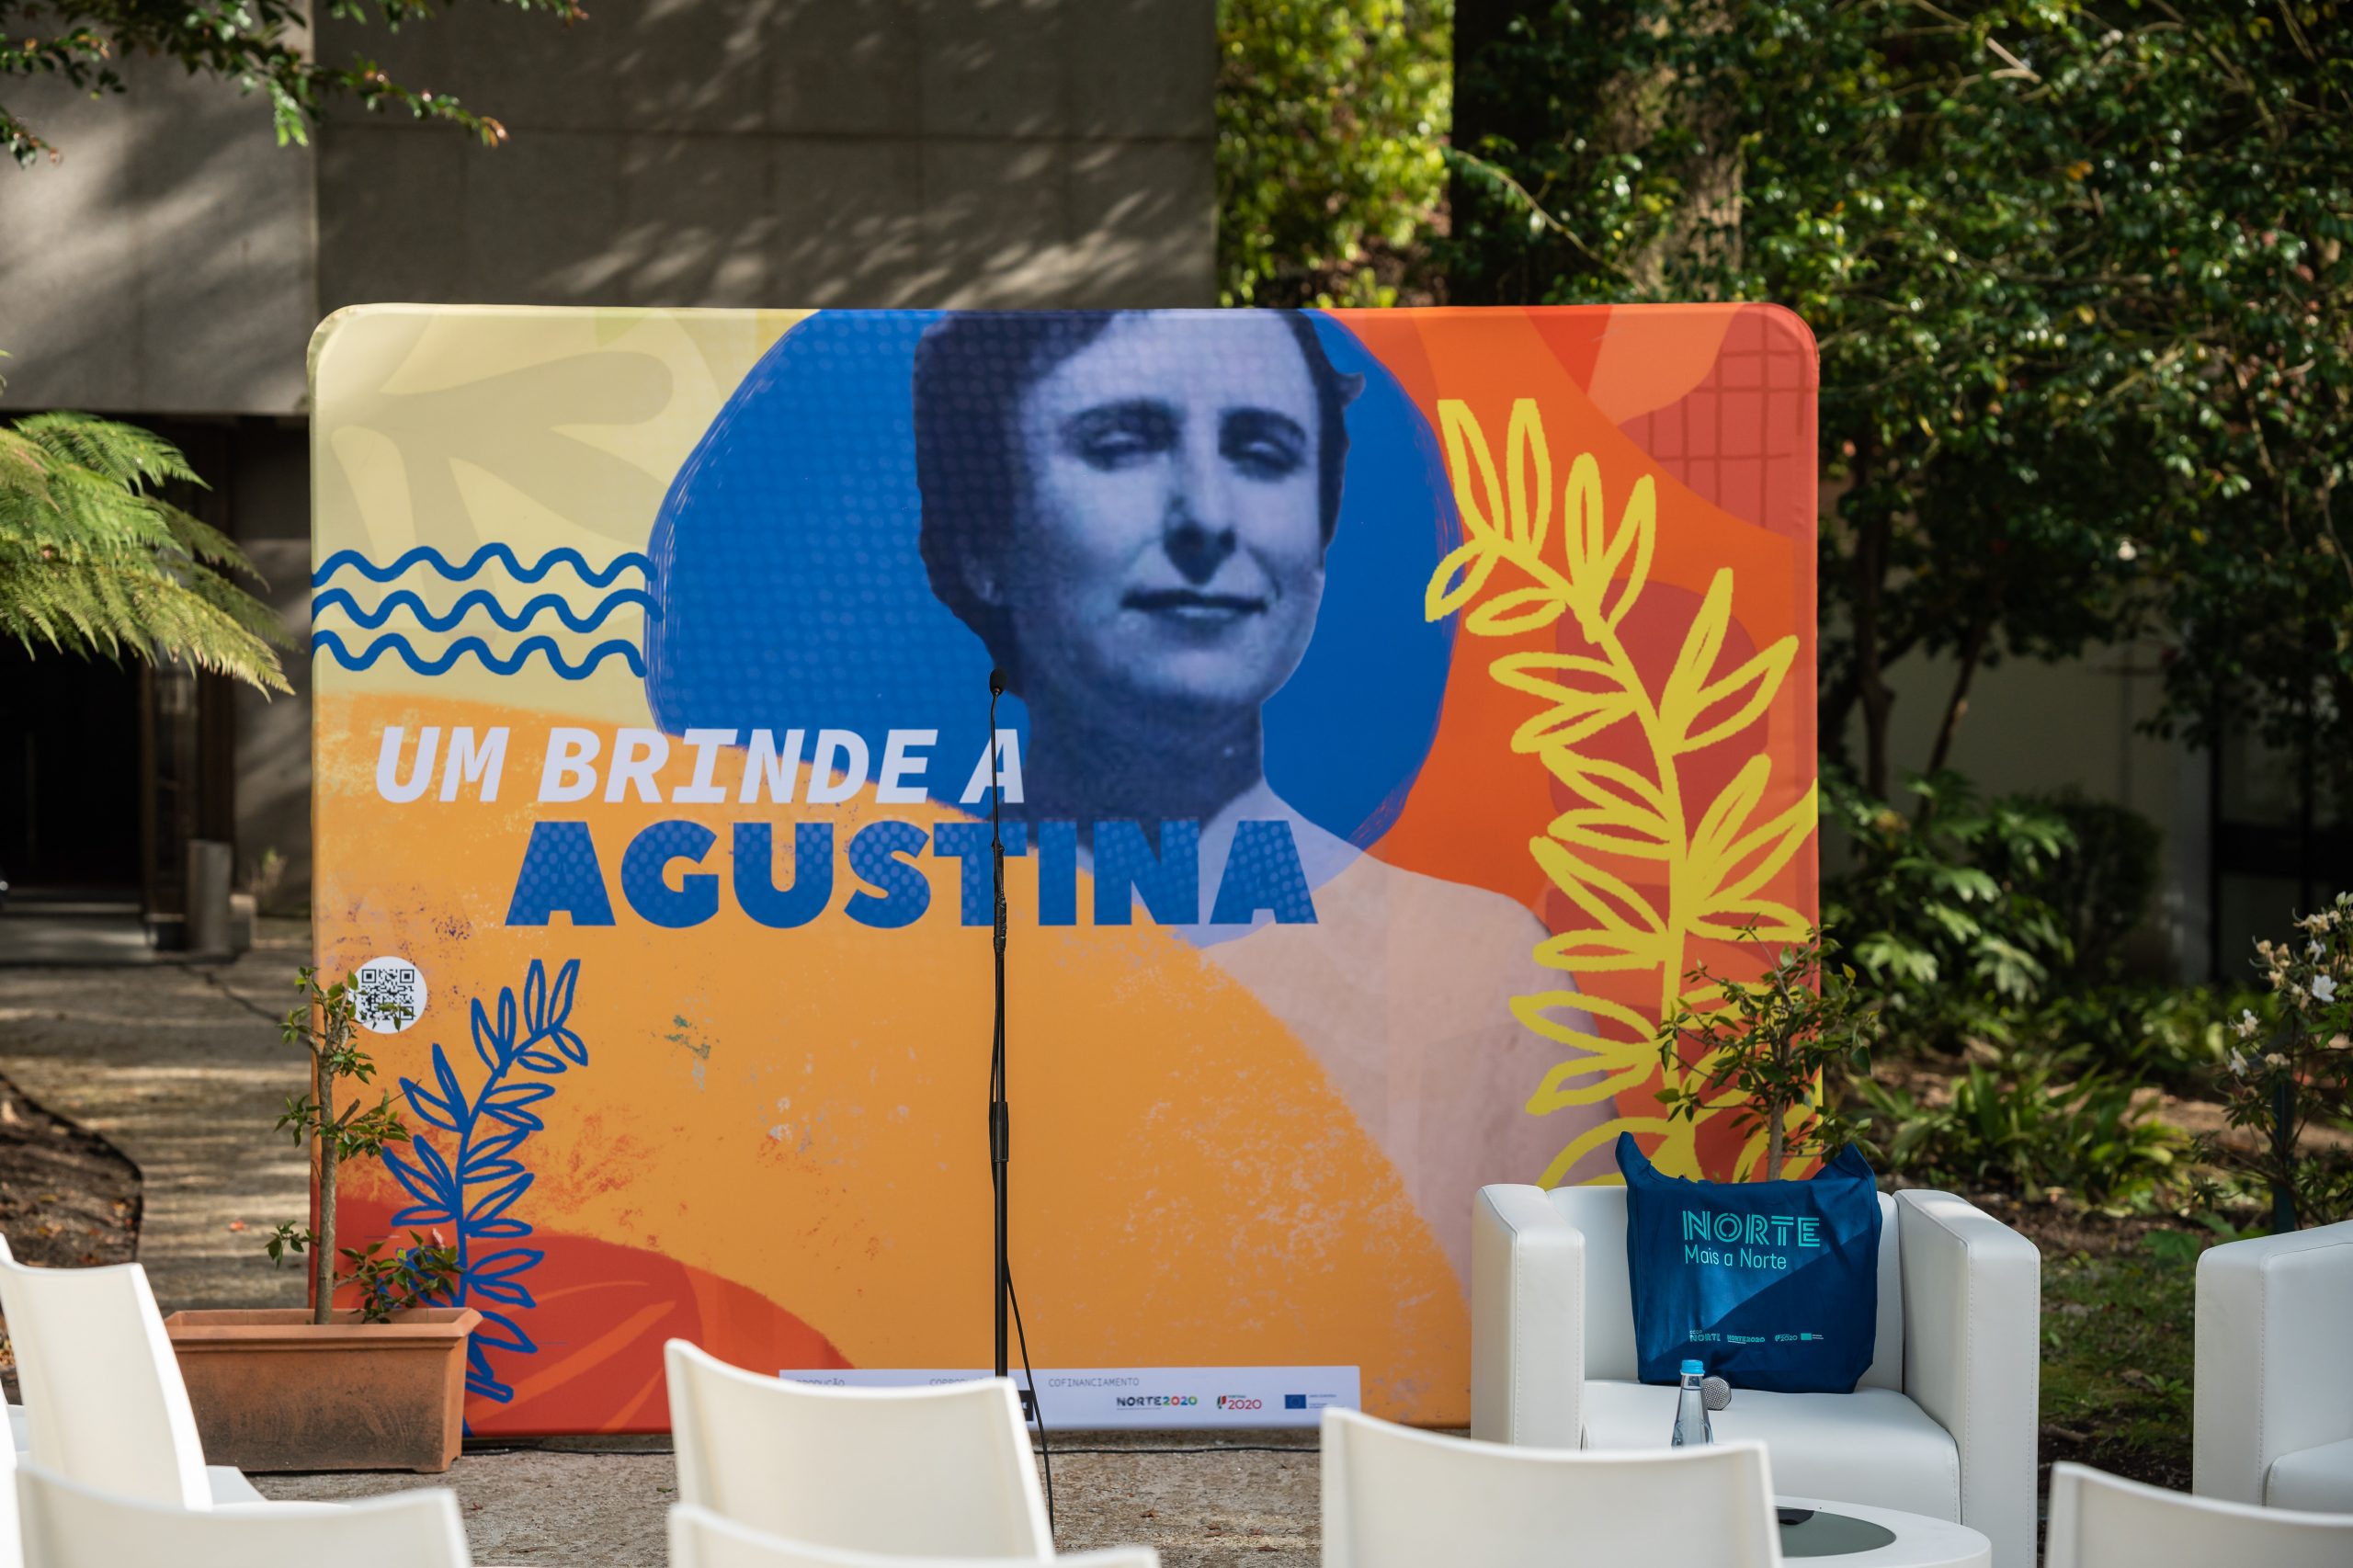 Terceiro encontro do ciclo de conversas “Um Brinde a Agustina” acontece no dia 18, nos jardins da CCDR-NORTE